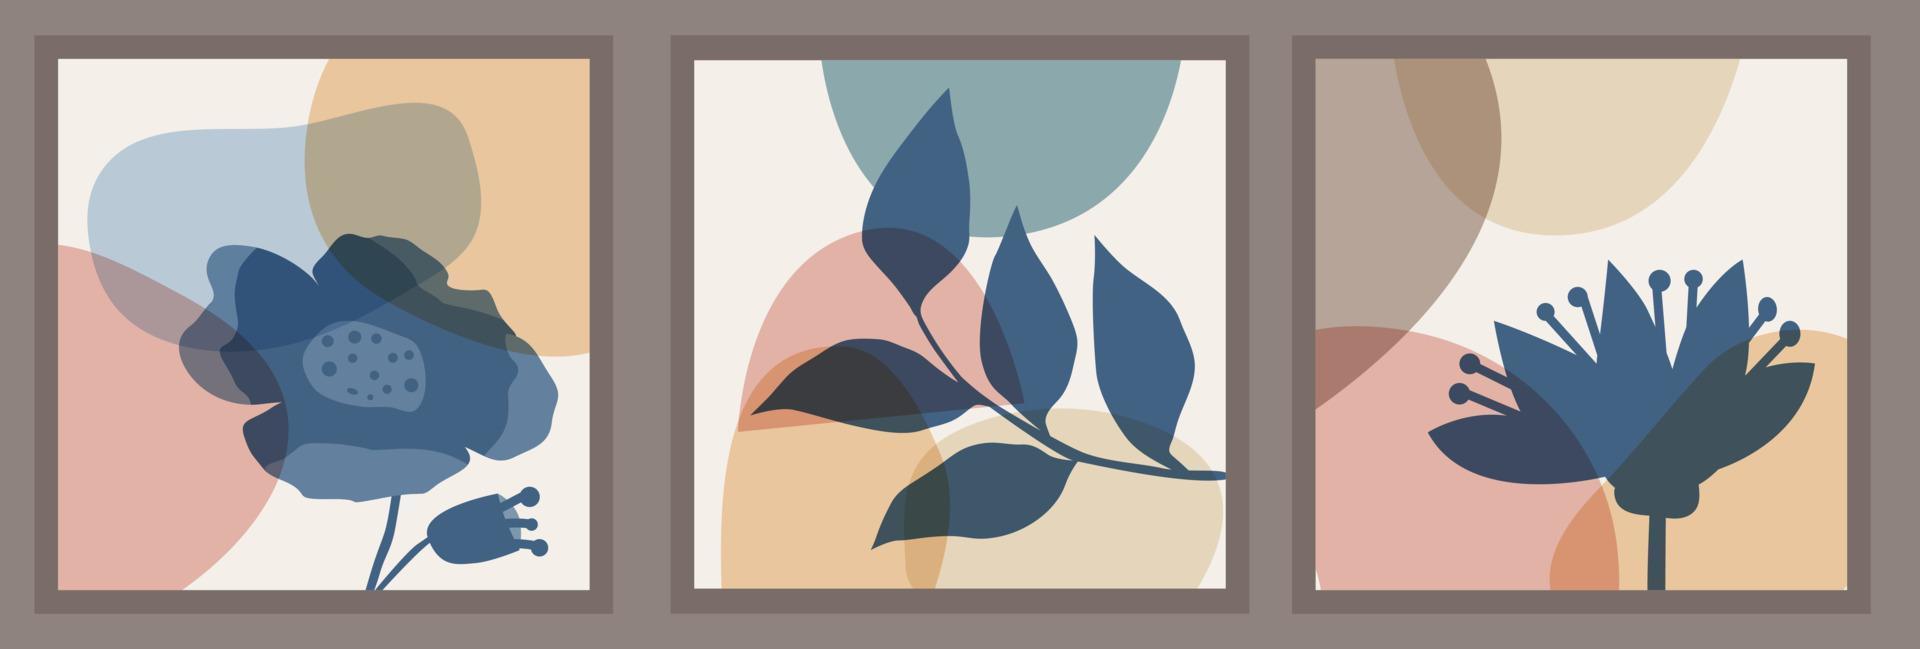 set di modelli con composizione astratta di forme semplici ed elementi botanici naturali. stile collage, minimalismo vettore